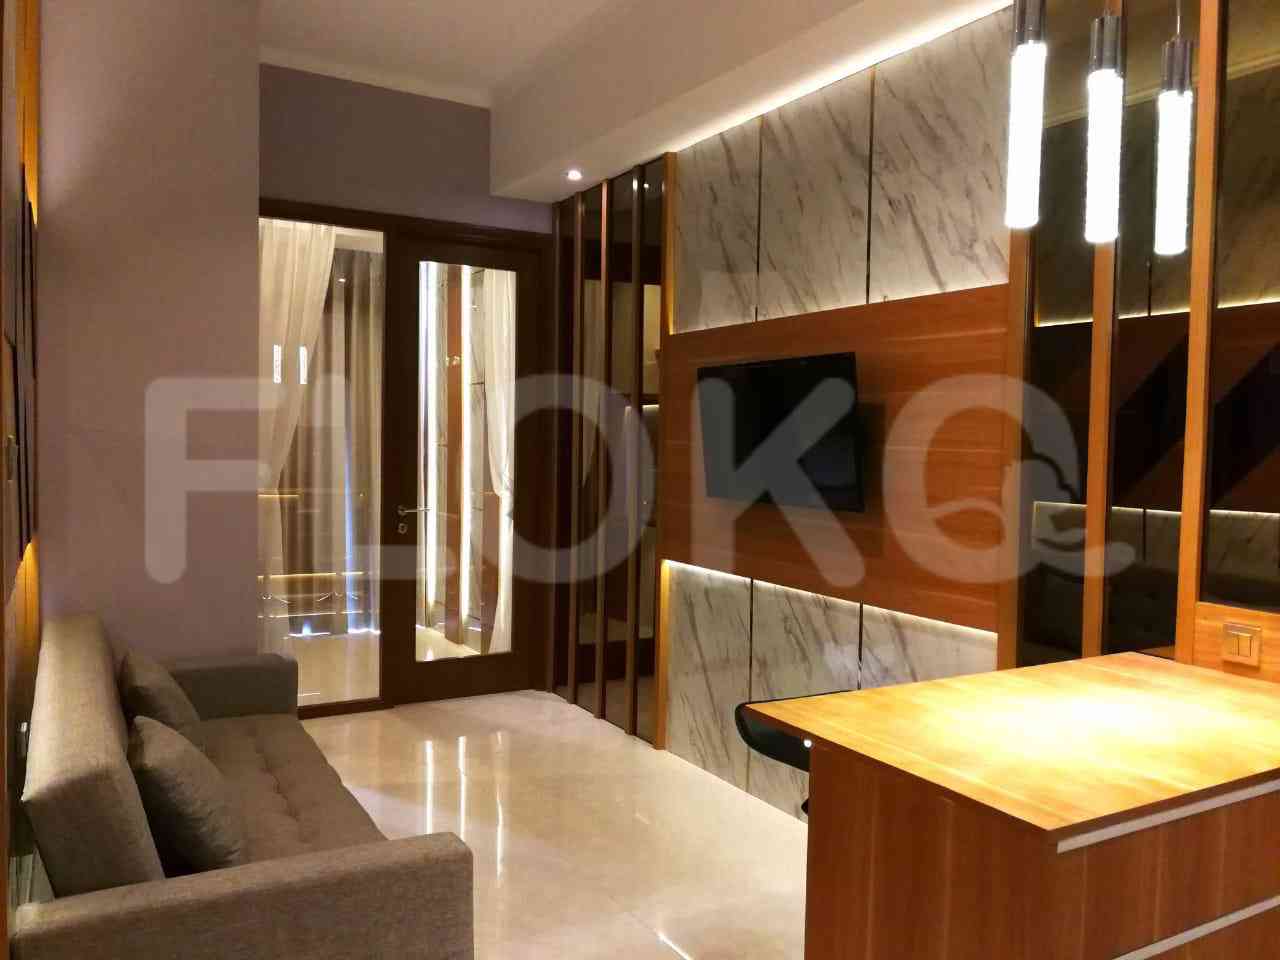 2 Bedroom on 15th Floor for Rent in Taman Anggrek Residence - ftaae7 1